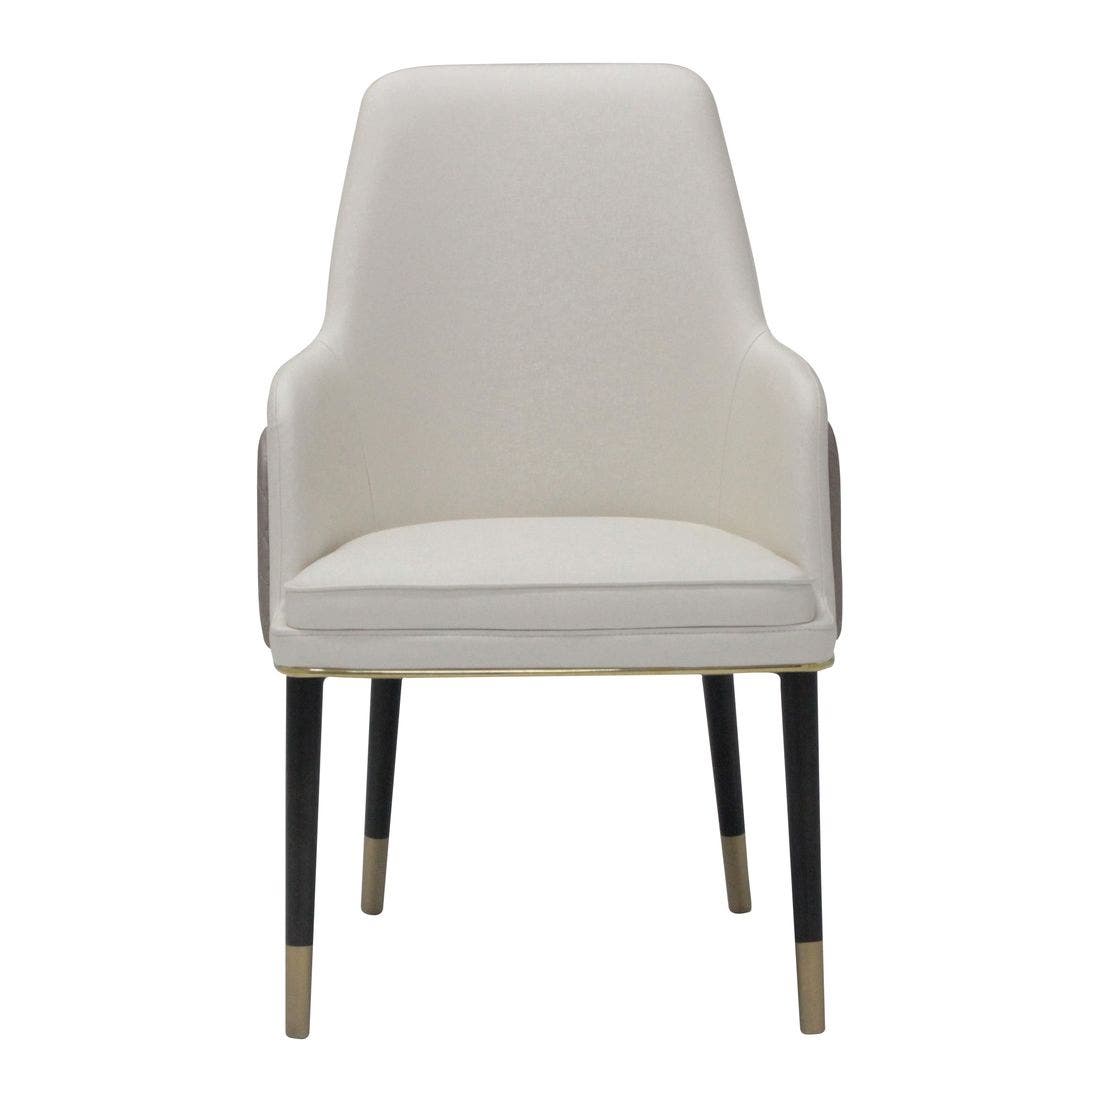 เก้าอี้ทานอาหาร เก้าอี้เหล็กเบาะหนัง รุ่น Woman-Plus สีสีเทา-SB Design Square